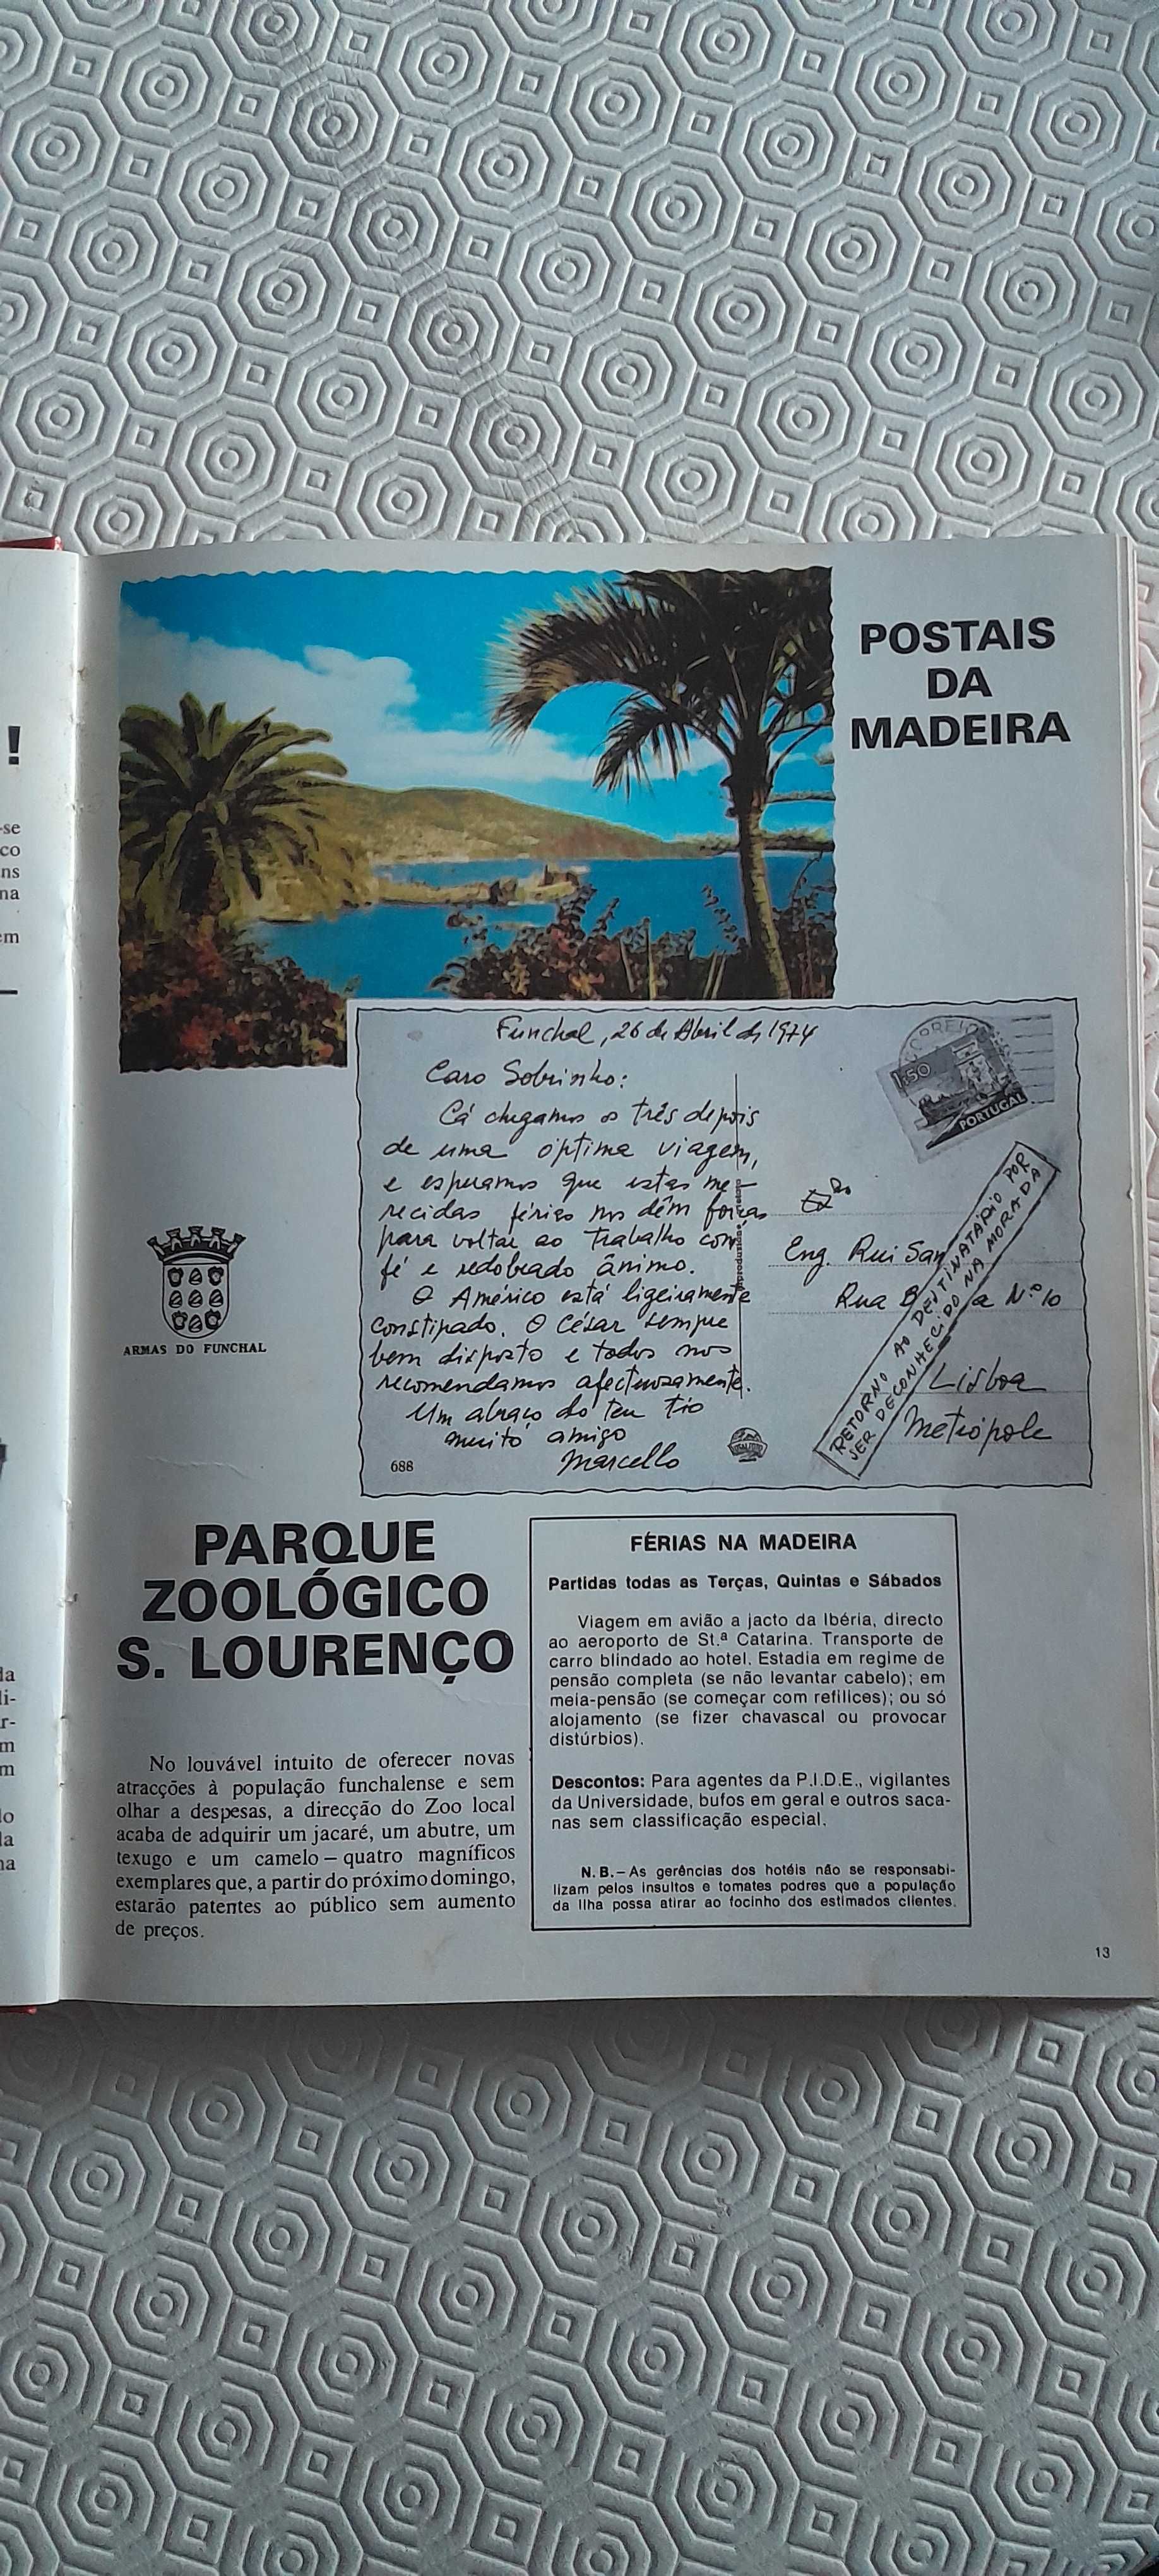 Livro a Gaiola Aberta nº 1 de 15/05/74.